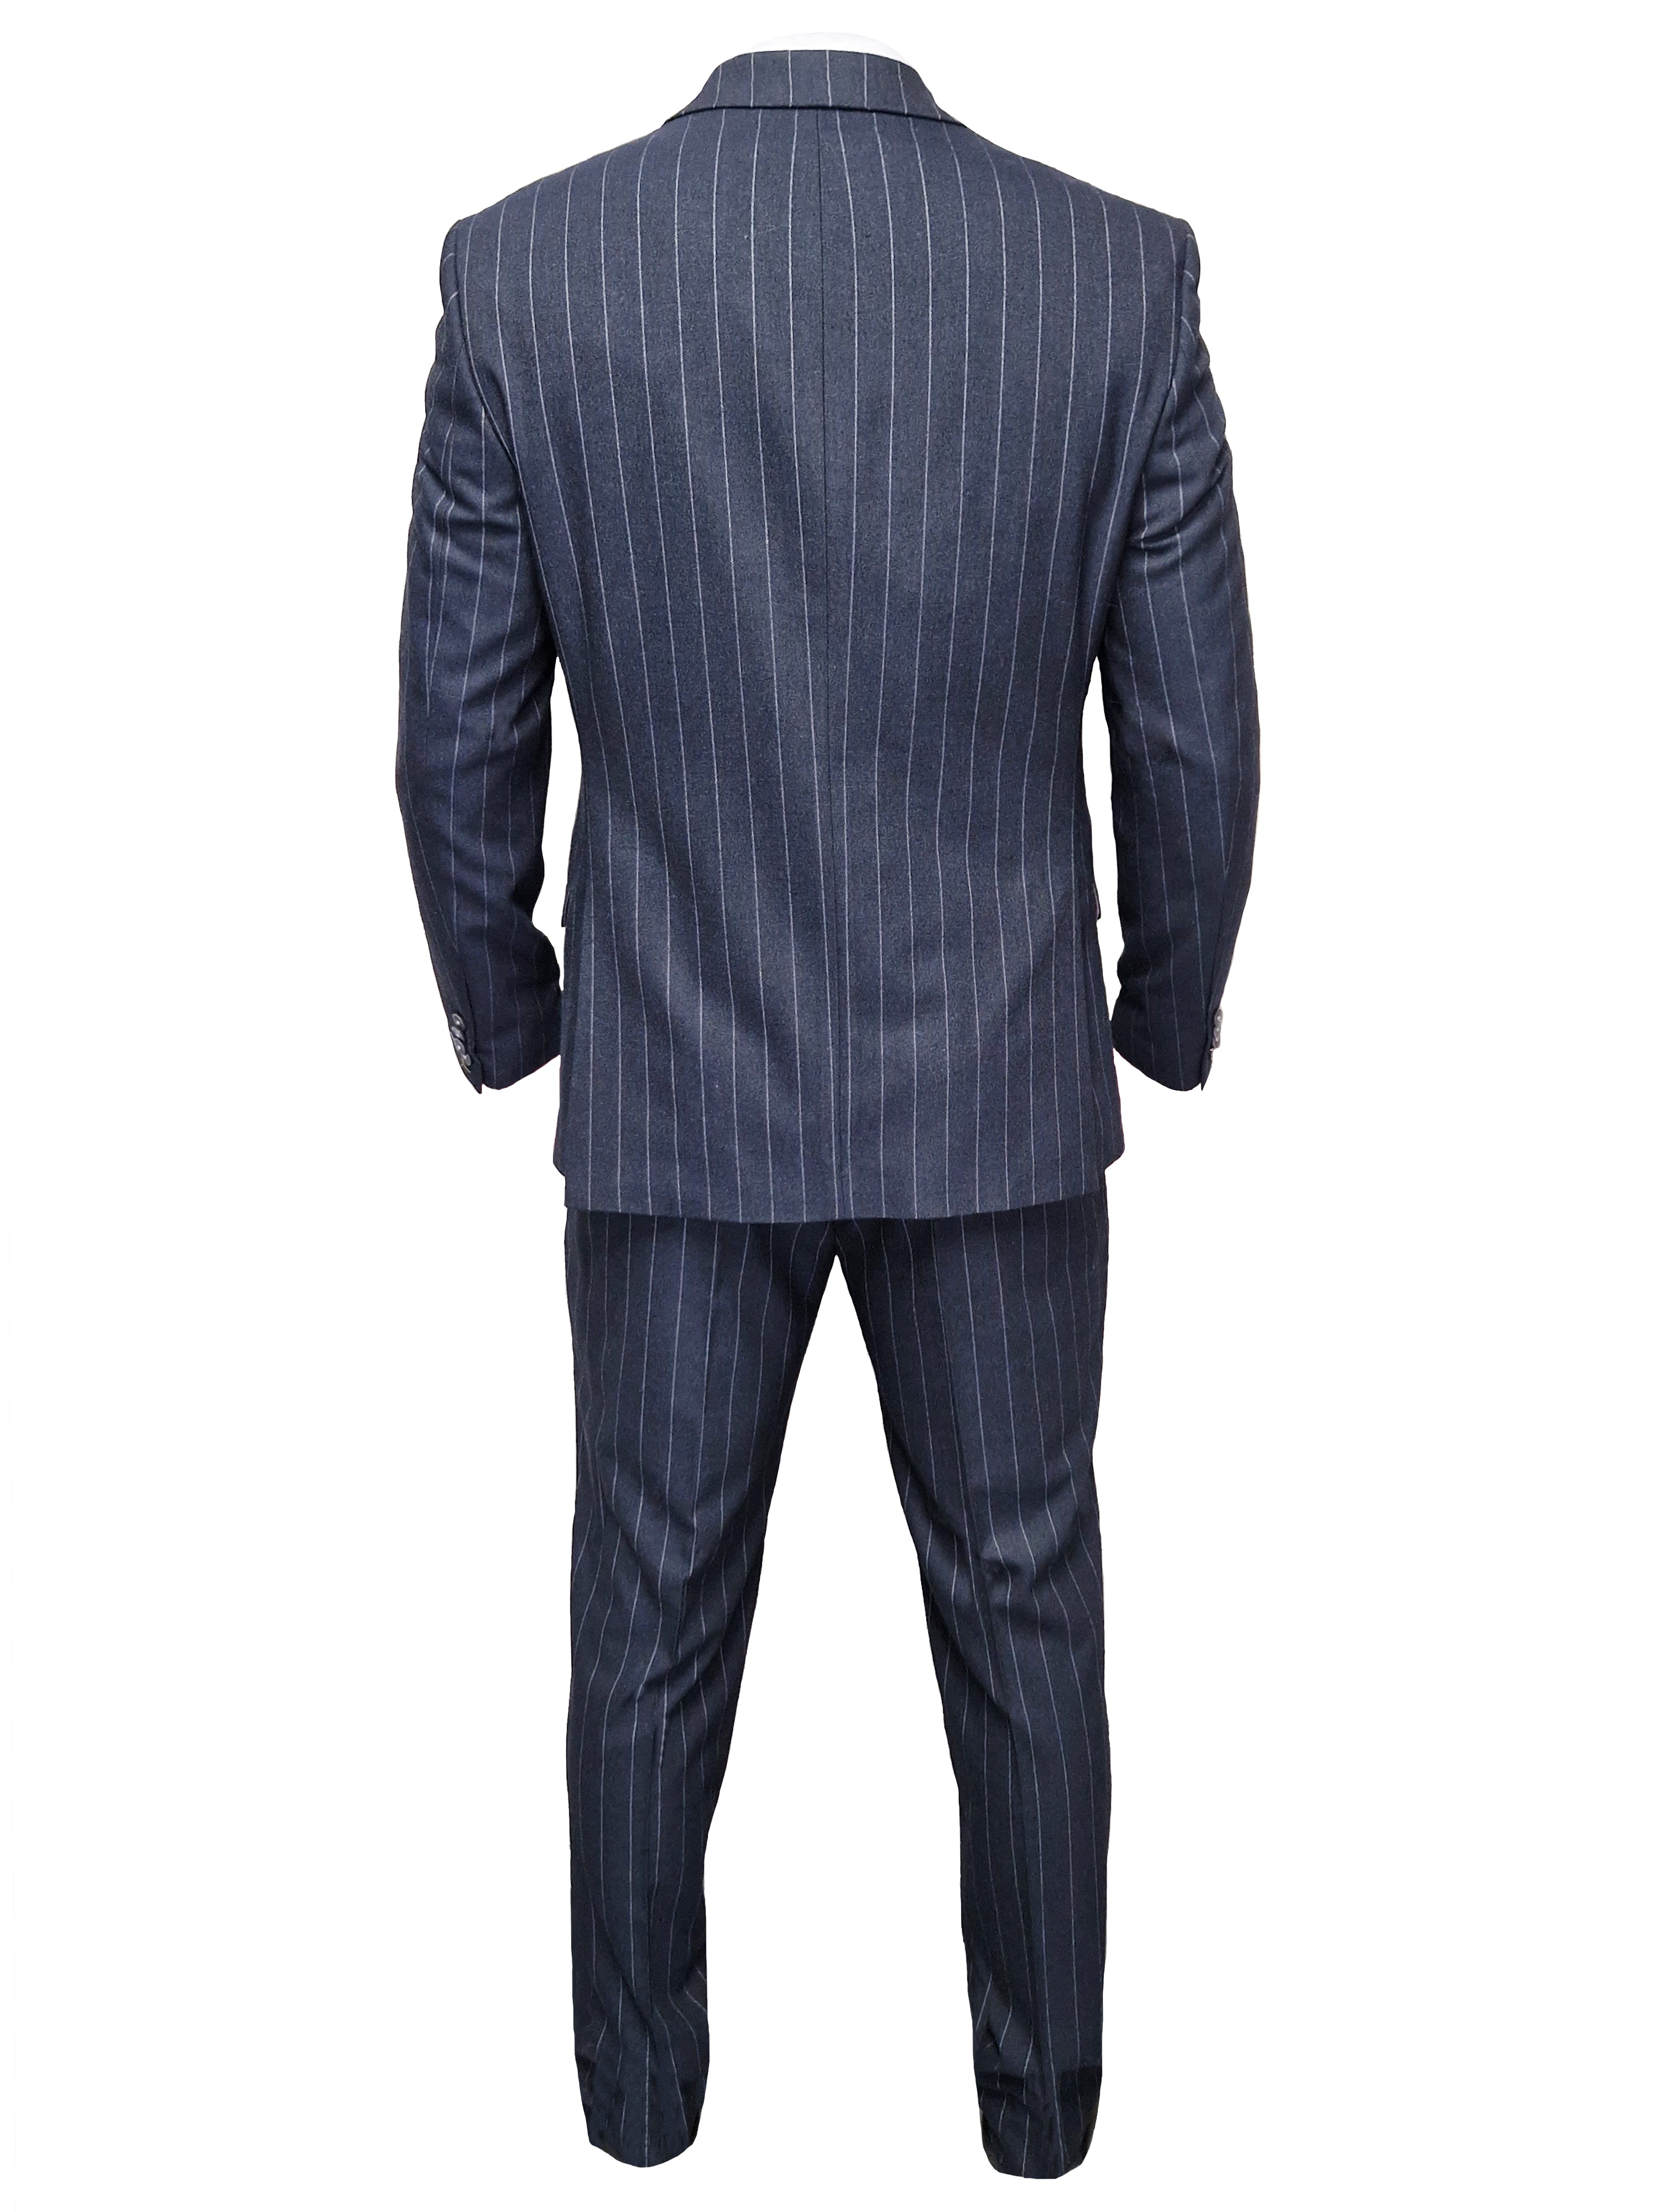 Navy Blue Striped Suit for Men - Cavani Invincible Suit